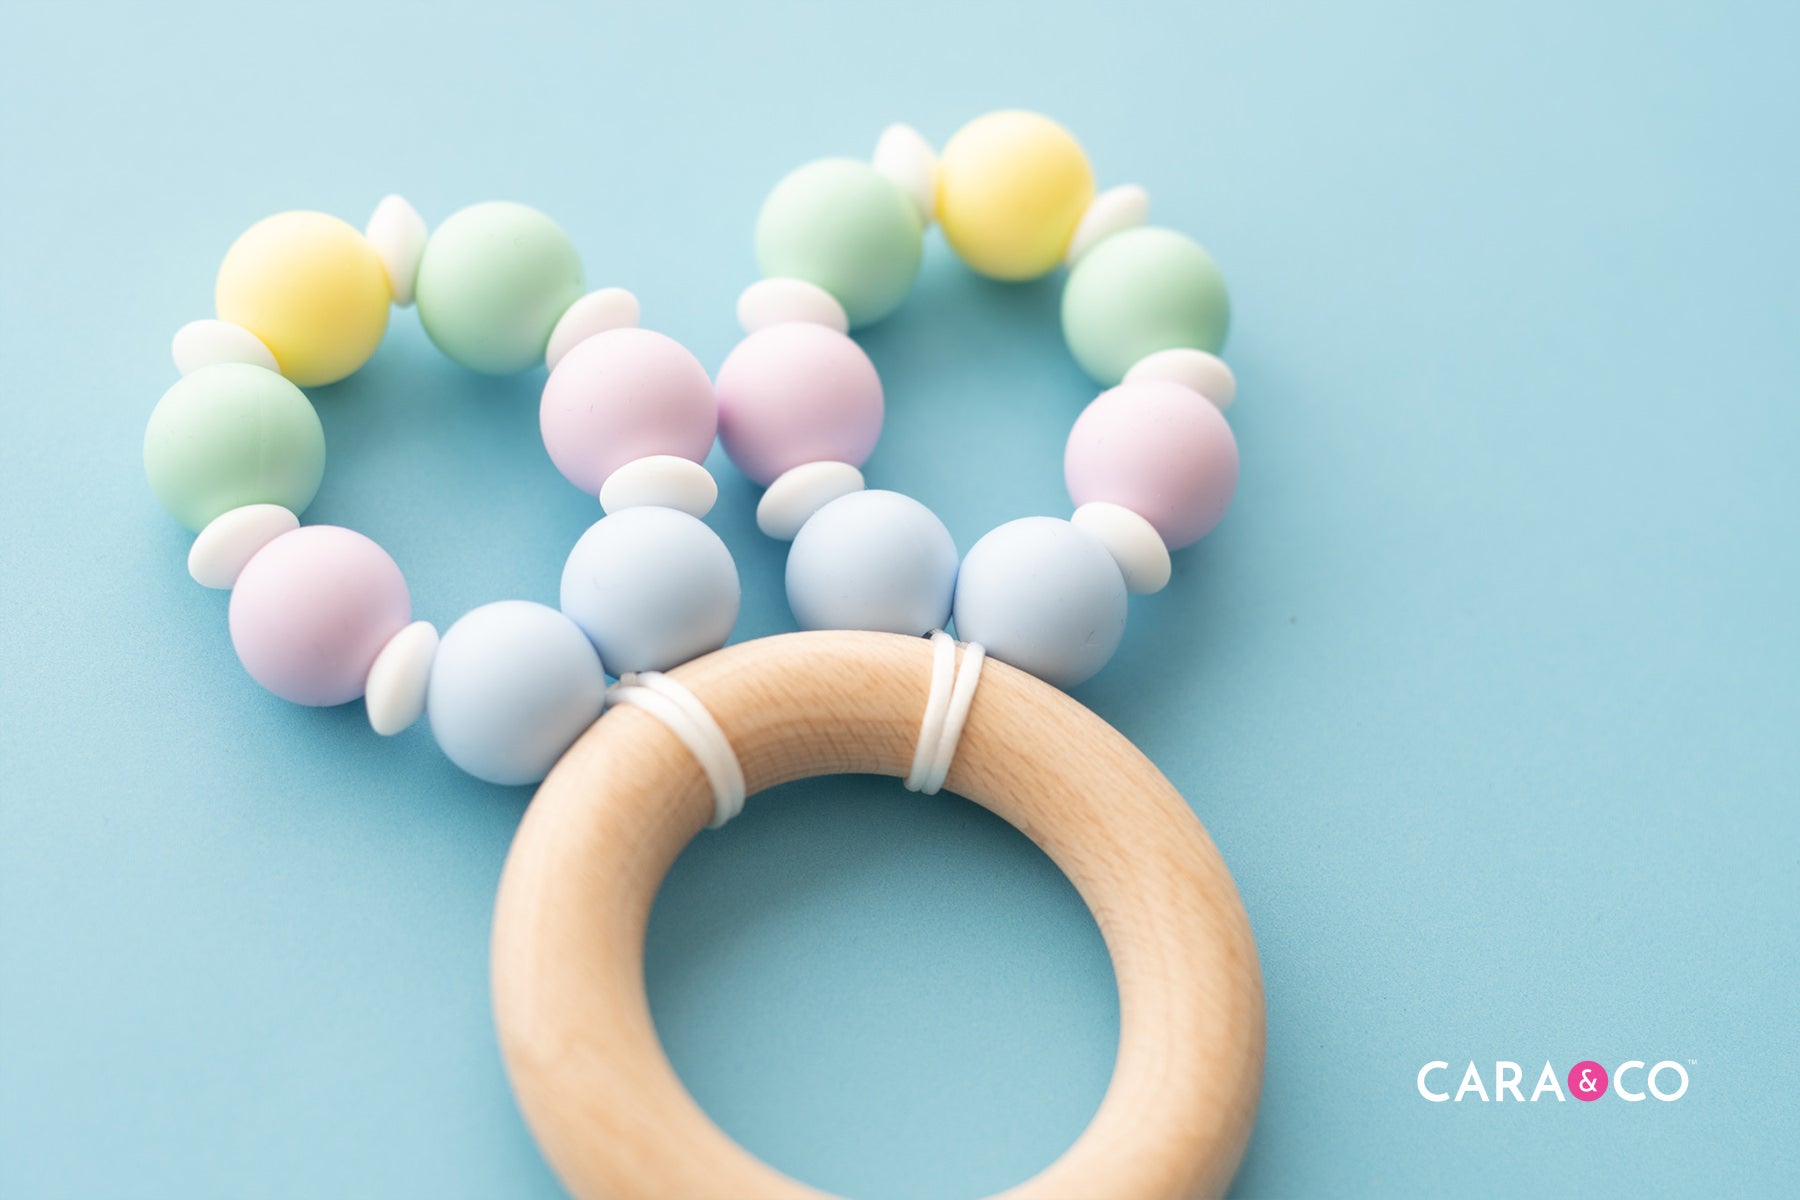 Silicone Bead Easter DIY - Cara & Co